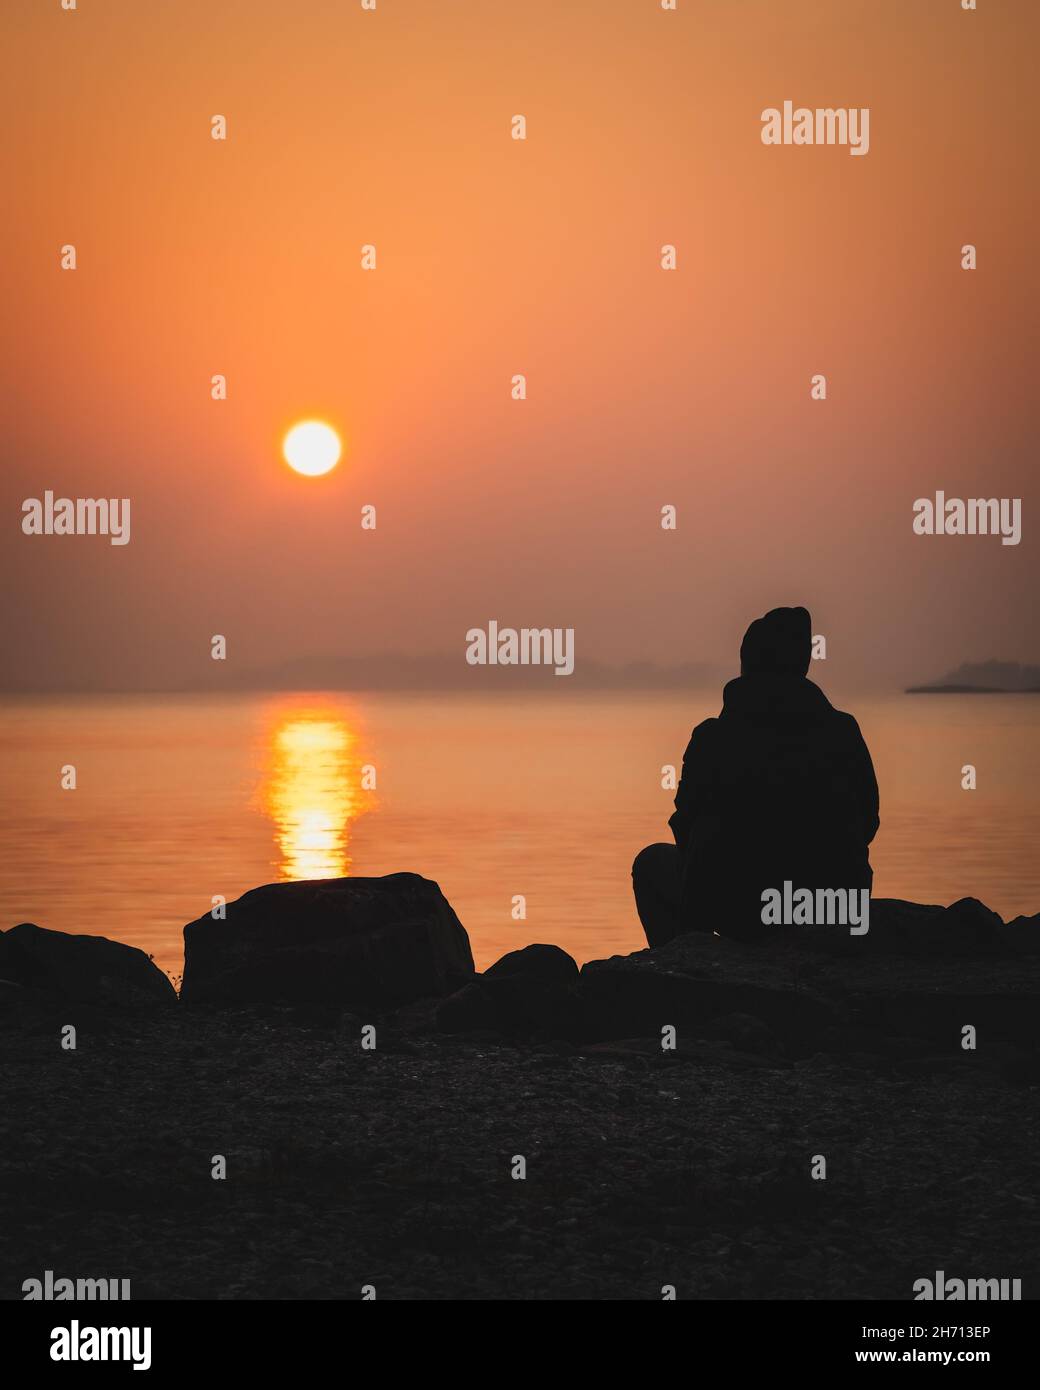 Coucher de soleil pittoresque au bord de la mer.Grand coucher de soleil sur l'horizon.Silhouette d'un homme assis seul sur un rocher en regardant le coucher de soleil orange.Lever du soleil le matin Banque D'Images